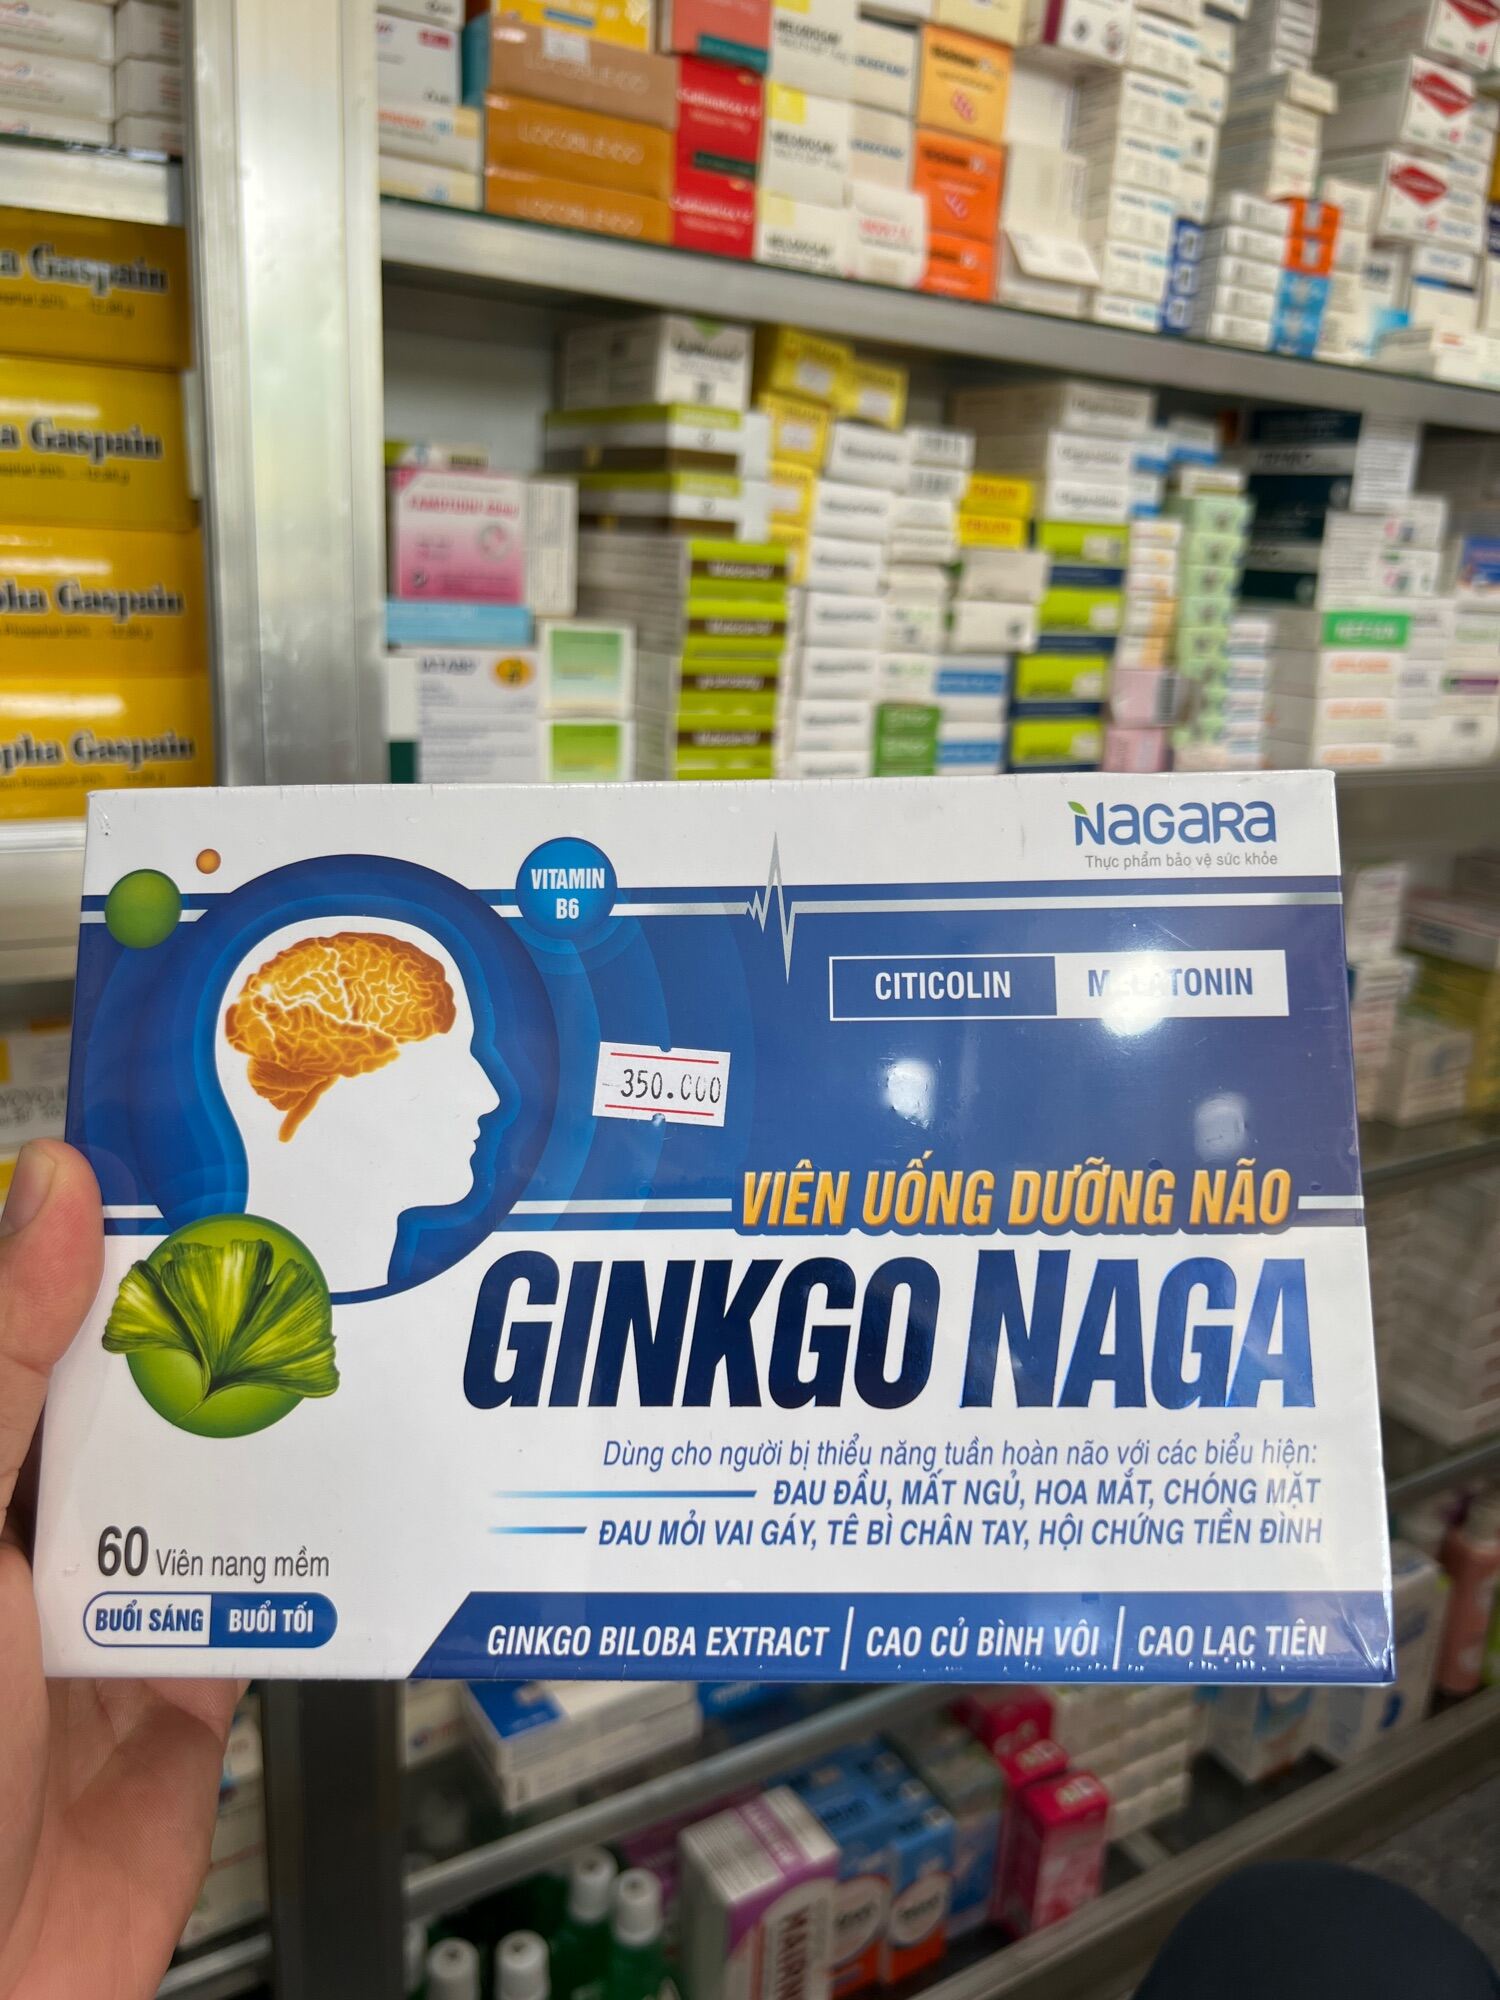 Gingo naga